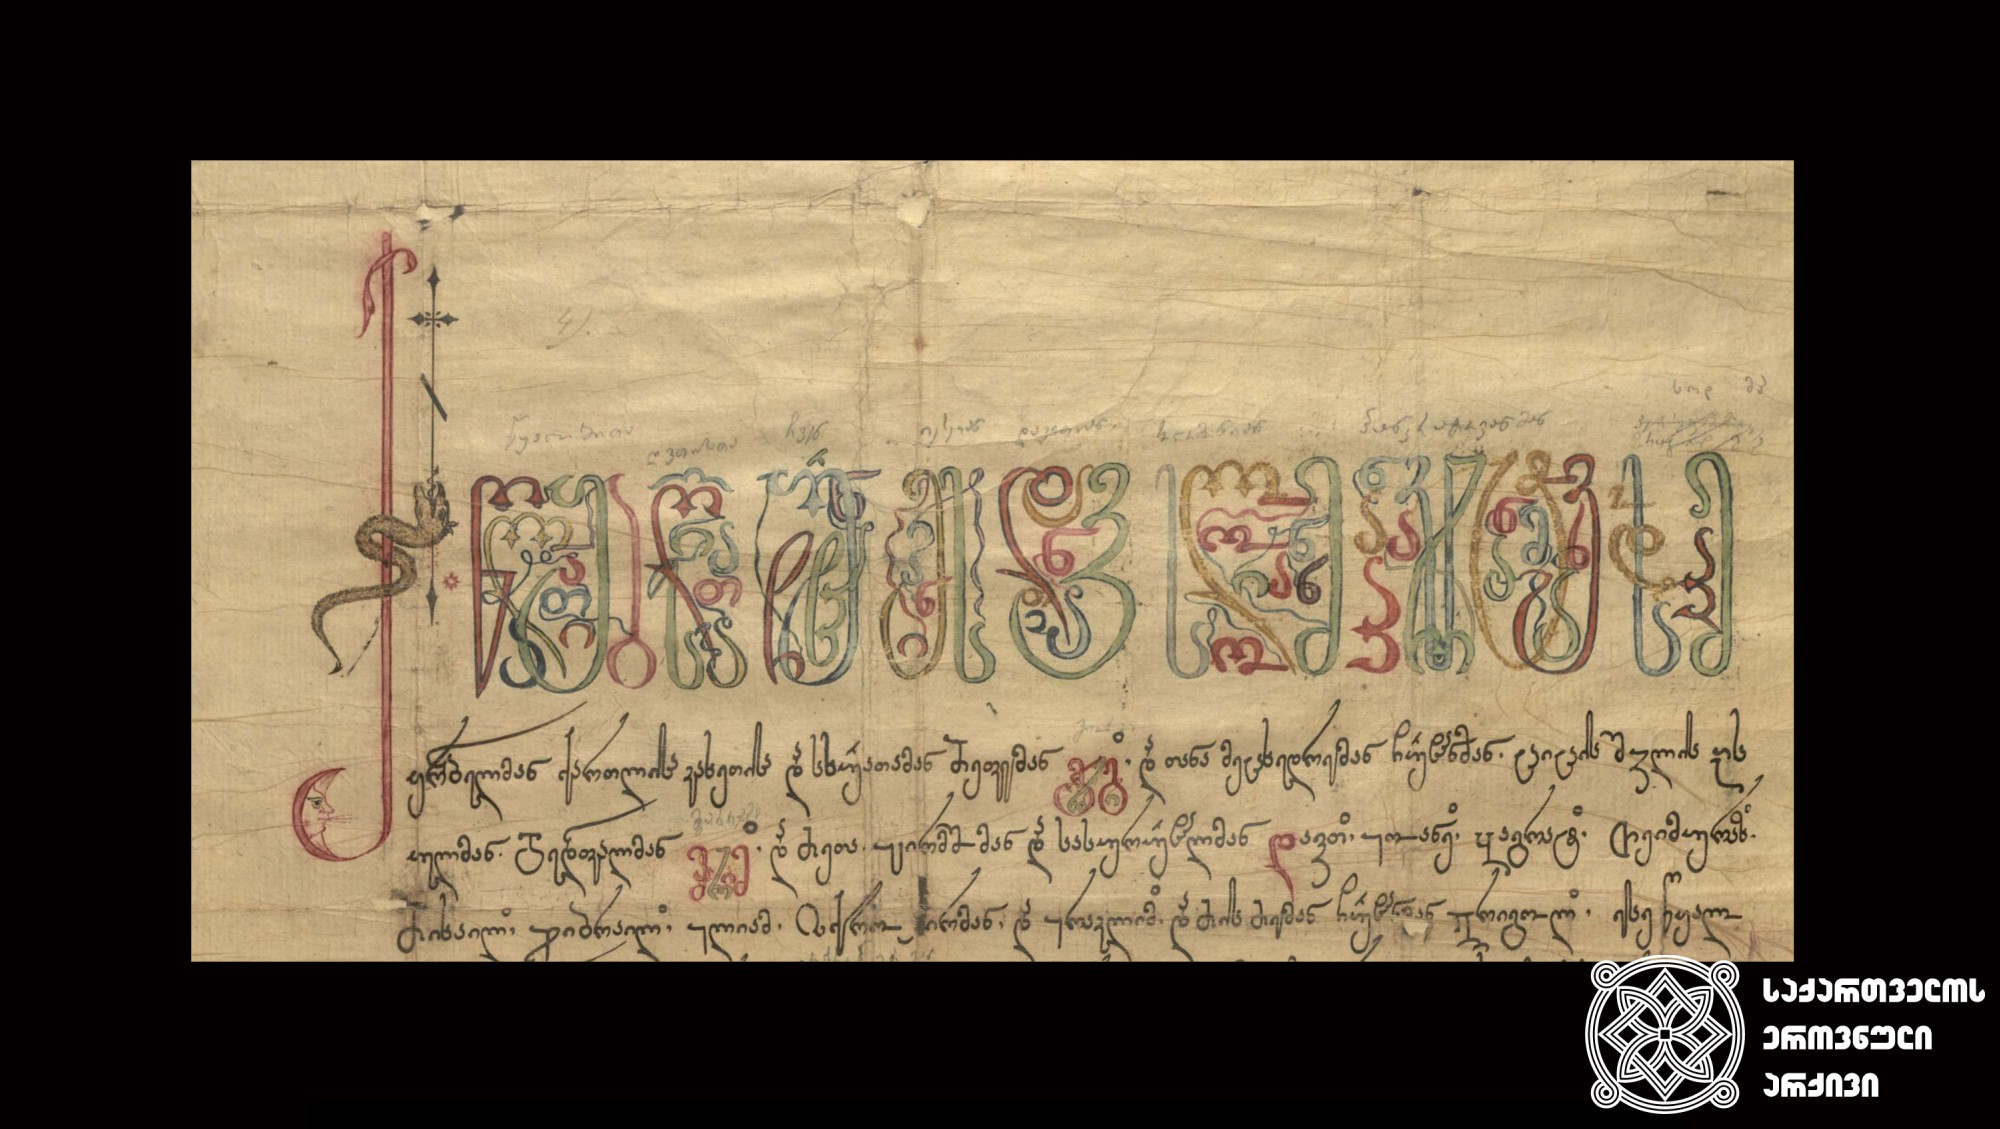 მხედრული. მოურაობის წყალობის წიგნი გიორგი XII-ისა ეშიკაღასბაშ ალექსანდრე მაყაშვილისადმი, 1798 წ. <br>
Mkhedruli scrip. The grace book of managing, issued by the King George XII to Eshikaghasbash Alexandre Makashvili, 1798